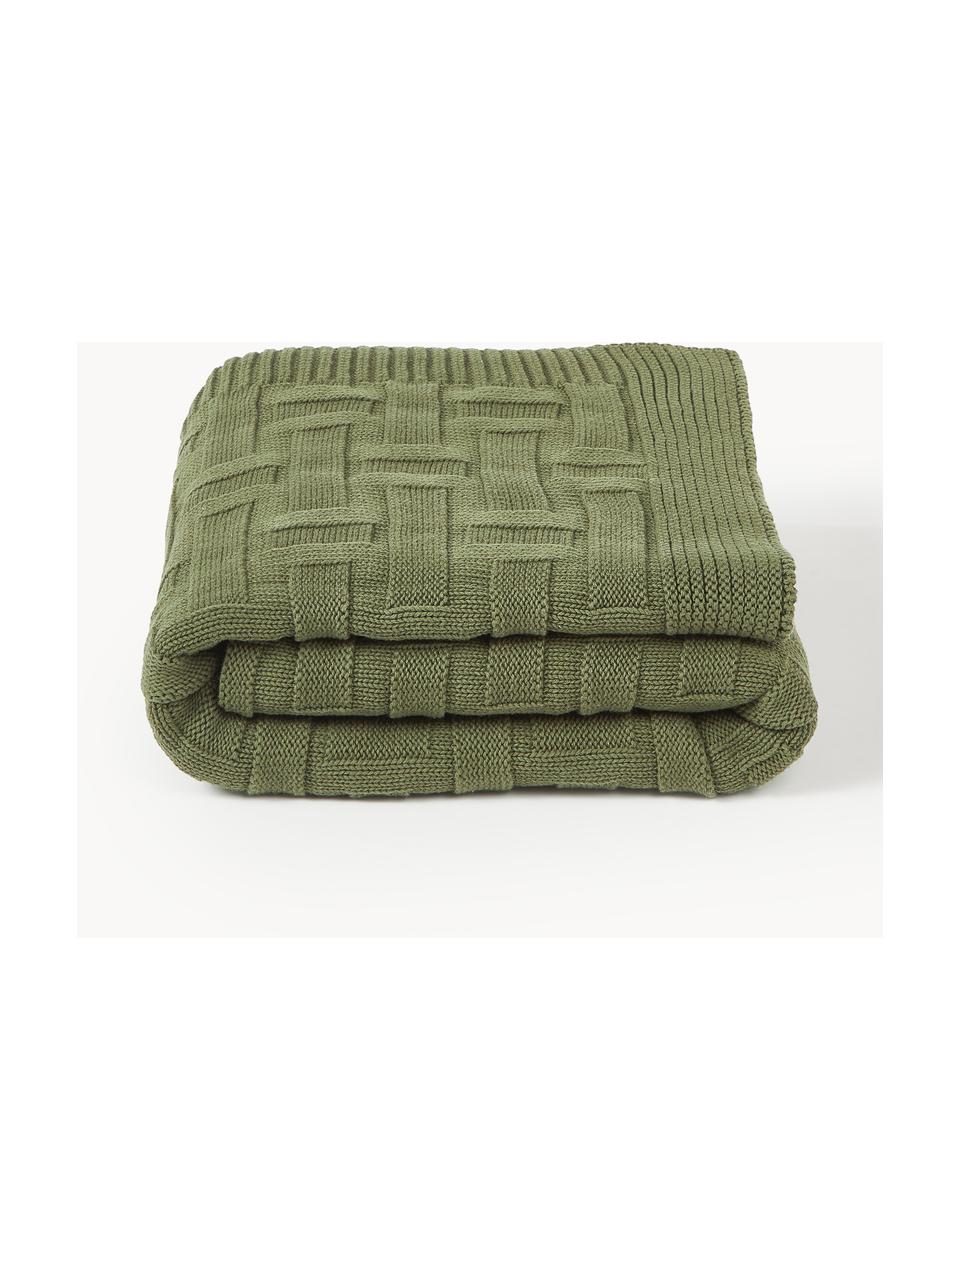 Couverture en coton tricoté Gwen, 100% coton, Vert olive, larg. 130 x long. 170 cm